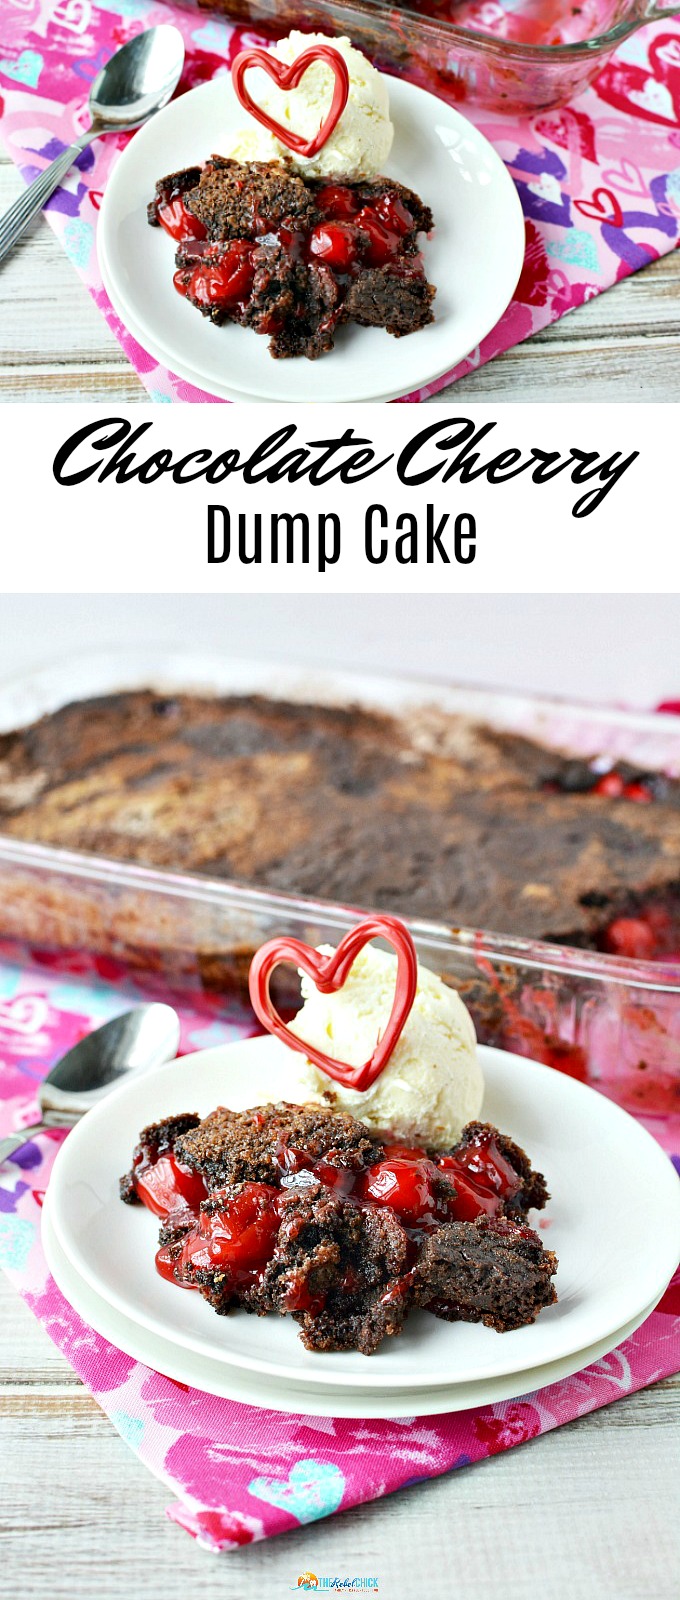 Valentine's Day Chocolate Cherry Dump Cake Recipe